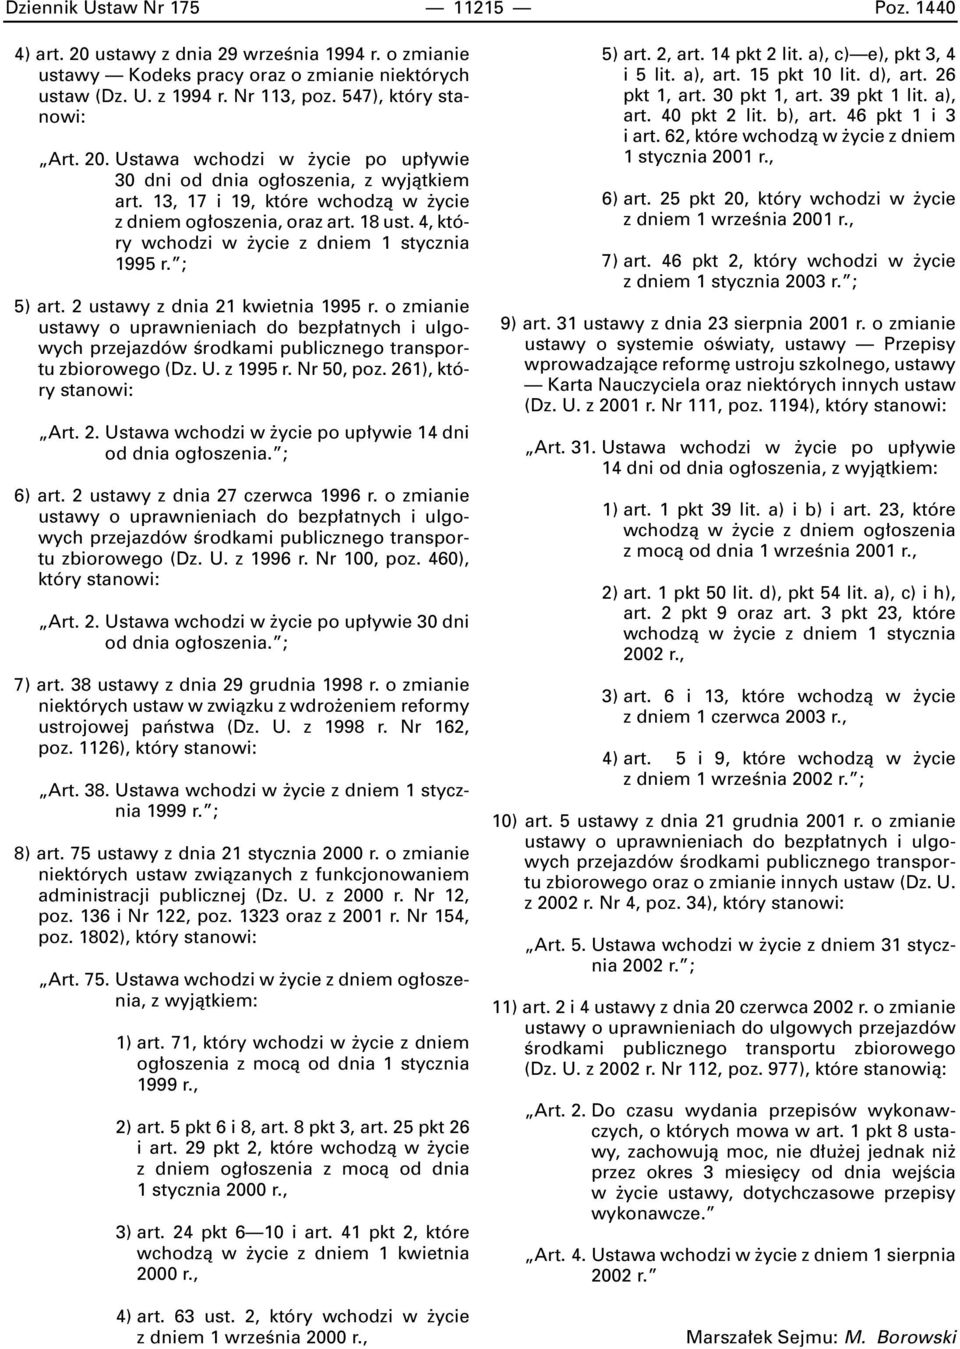 4, który wchodzi w ycie z dniem 1 stycznia 1995 r. ; 5) art. 2 ustawy z dnia 21 kwietnia 1995 r. o zmianie ustawy o uprawnieniach do bezp atnych i ulgowych zbiorowego (Dz. U. z 1995 r. Nr 50, poz.